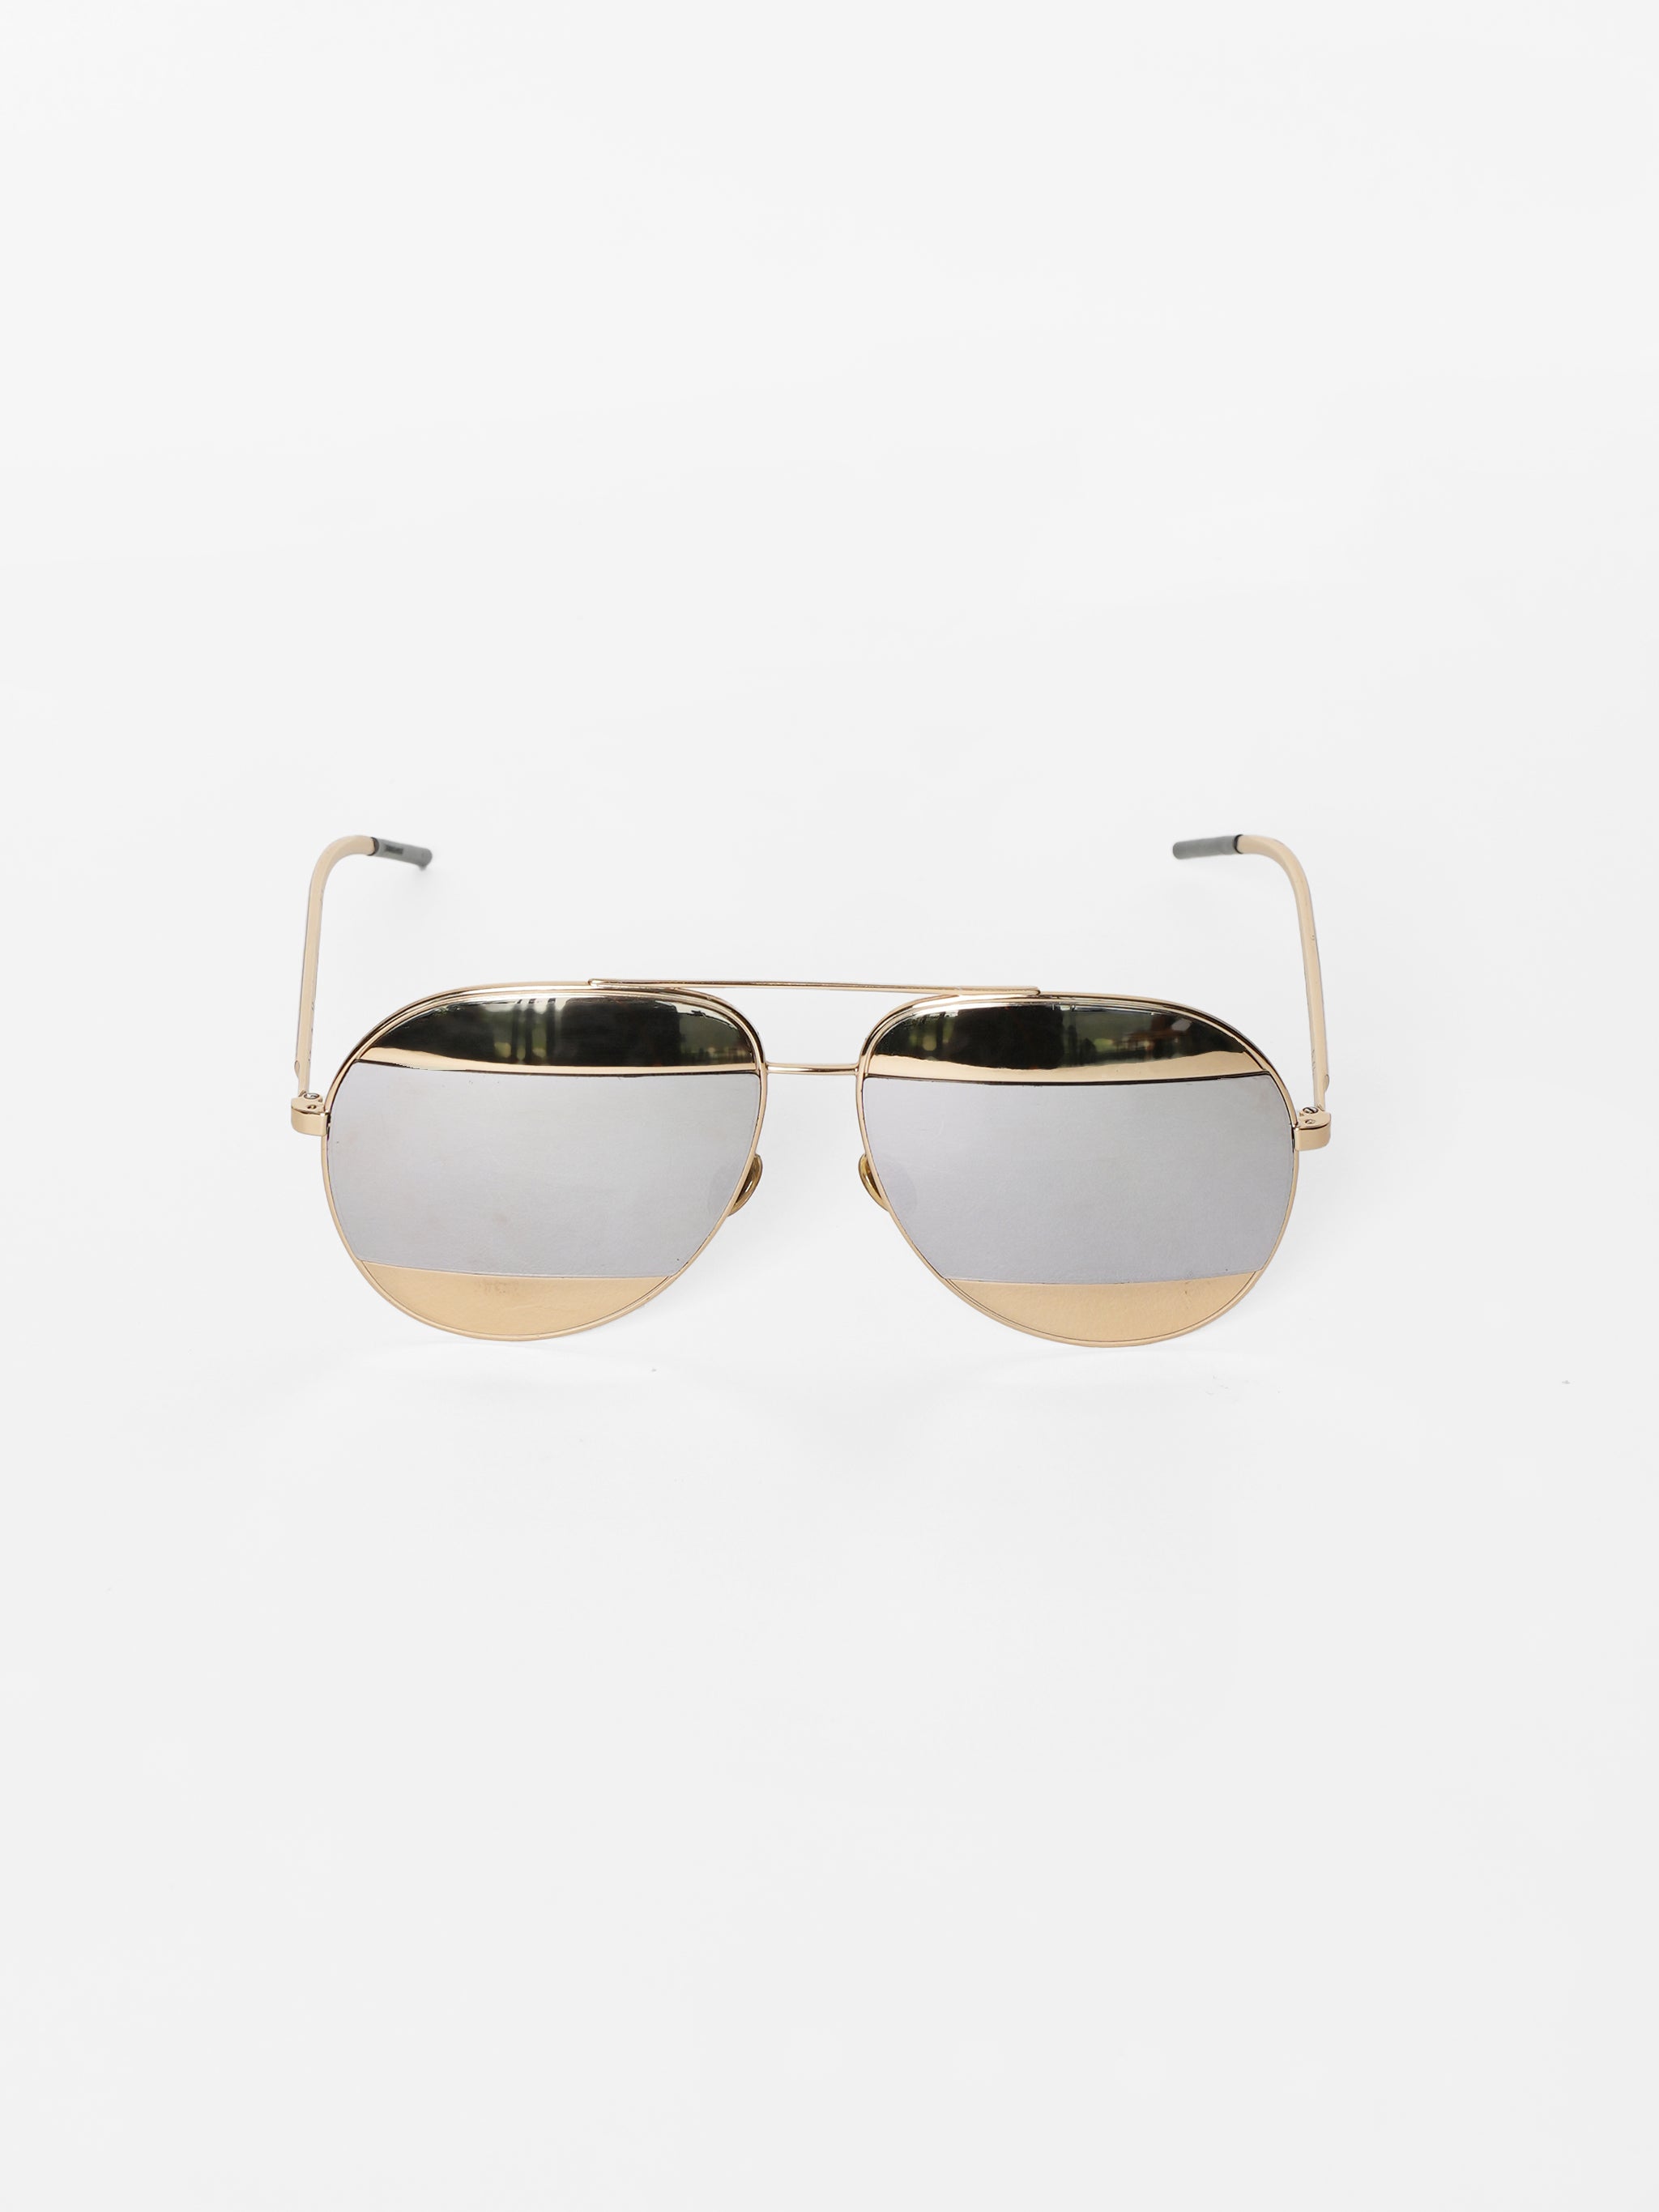 Christian Dior Split Aviator Sunglasses